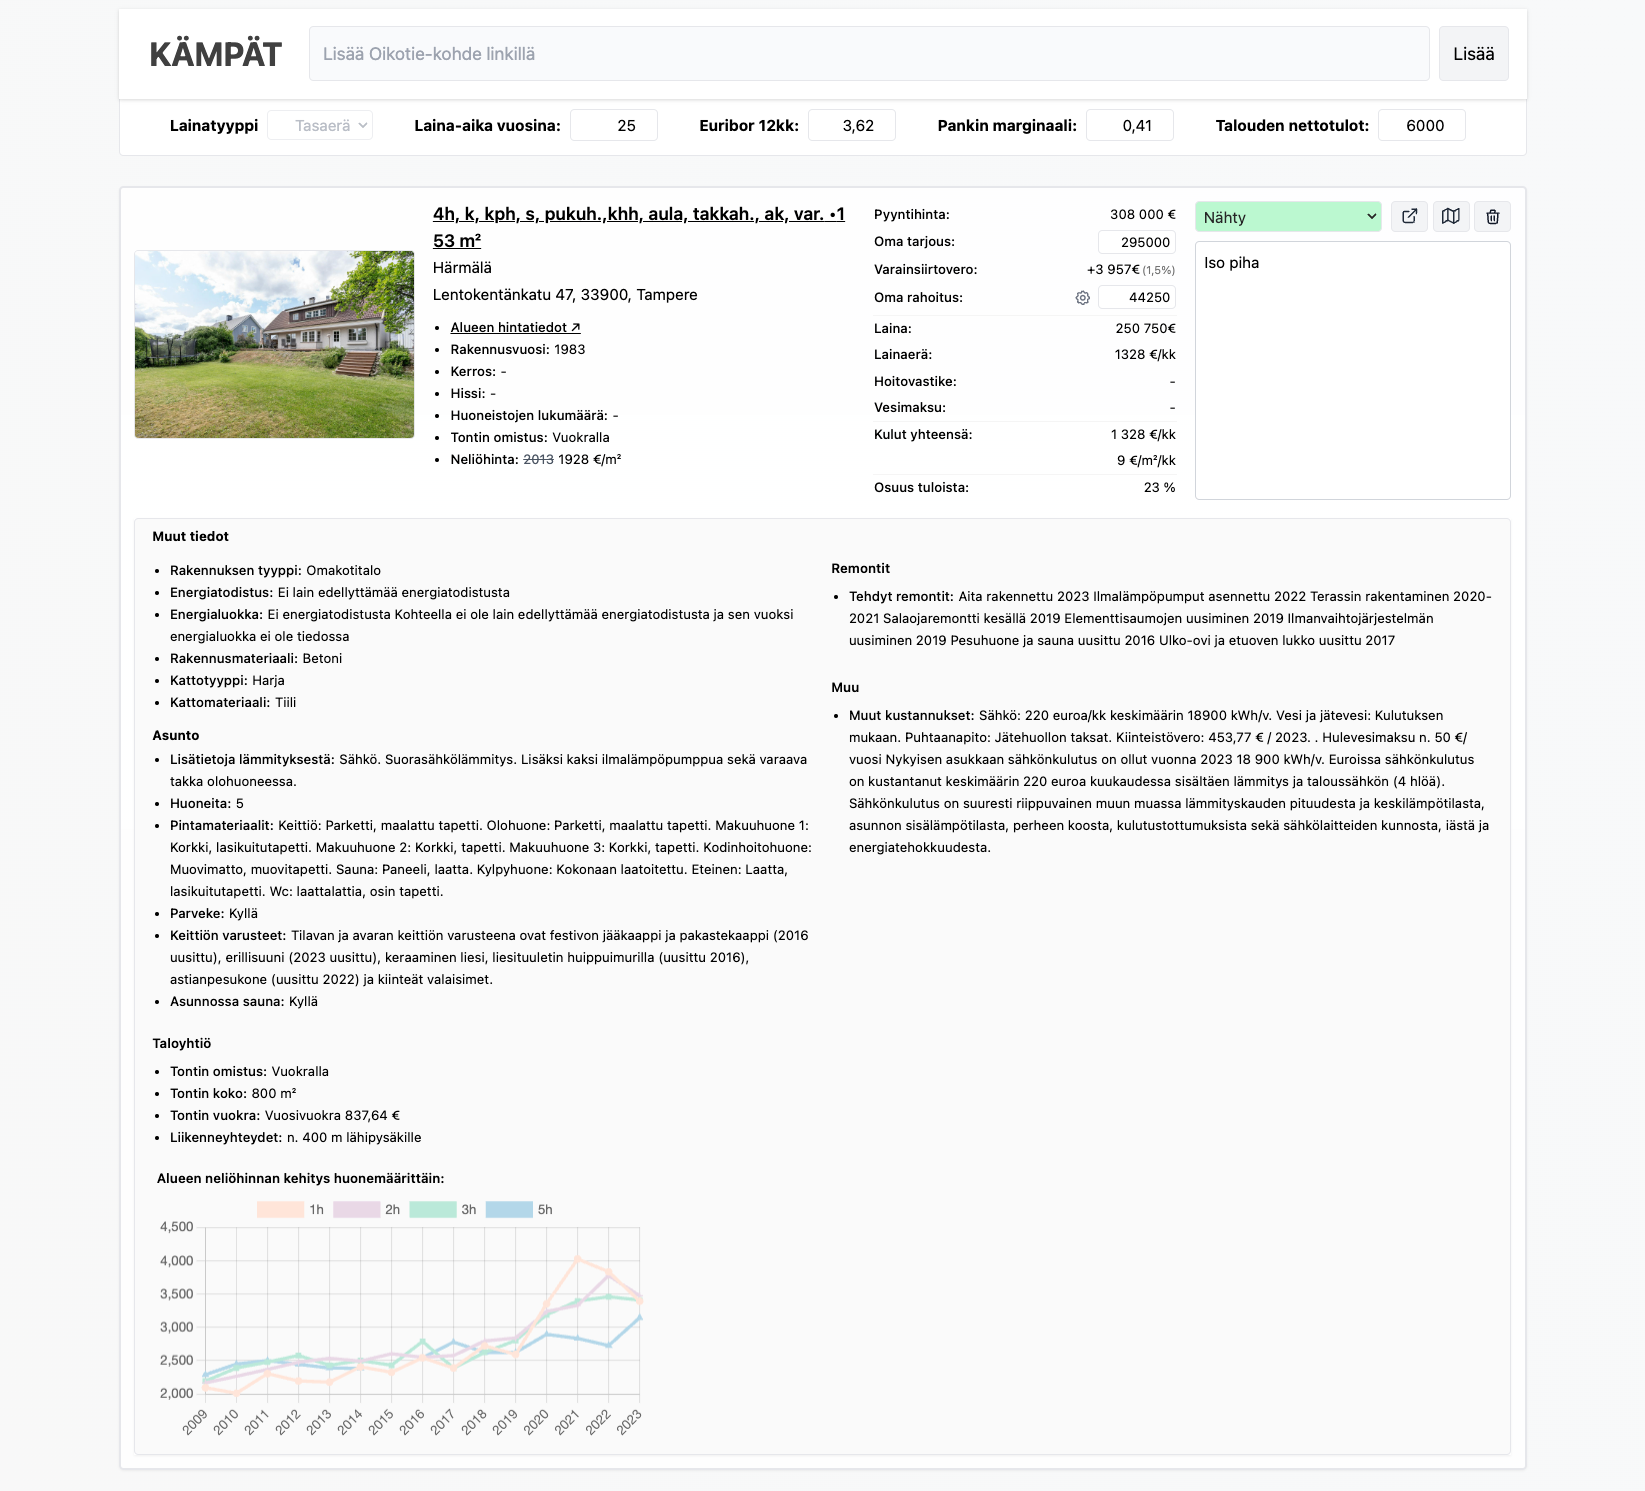 Screenshot of Kämpät.com tool